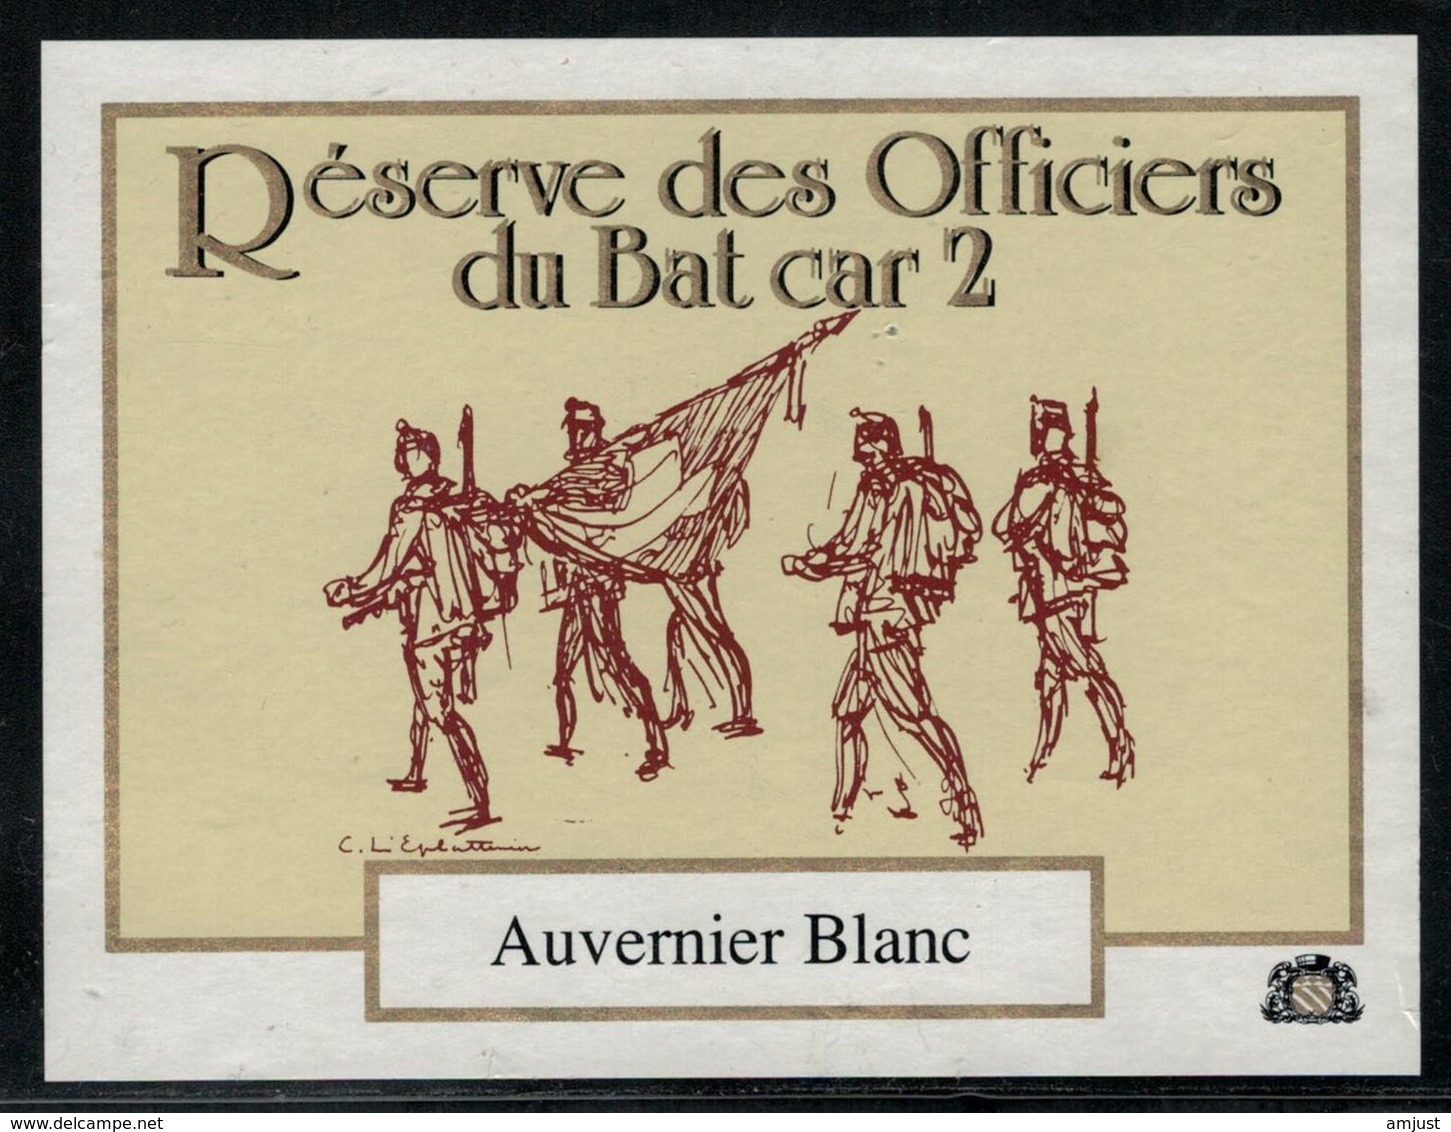 Etiquette De Vin // Auvernier Blanc, Réserve Des Officiers Du Bat Car 2 - Militaire